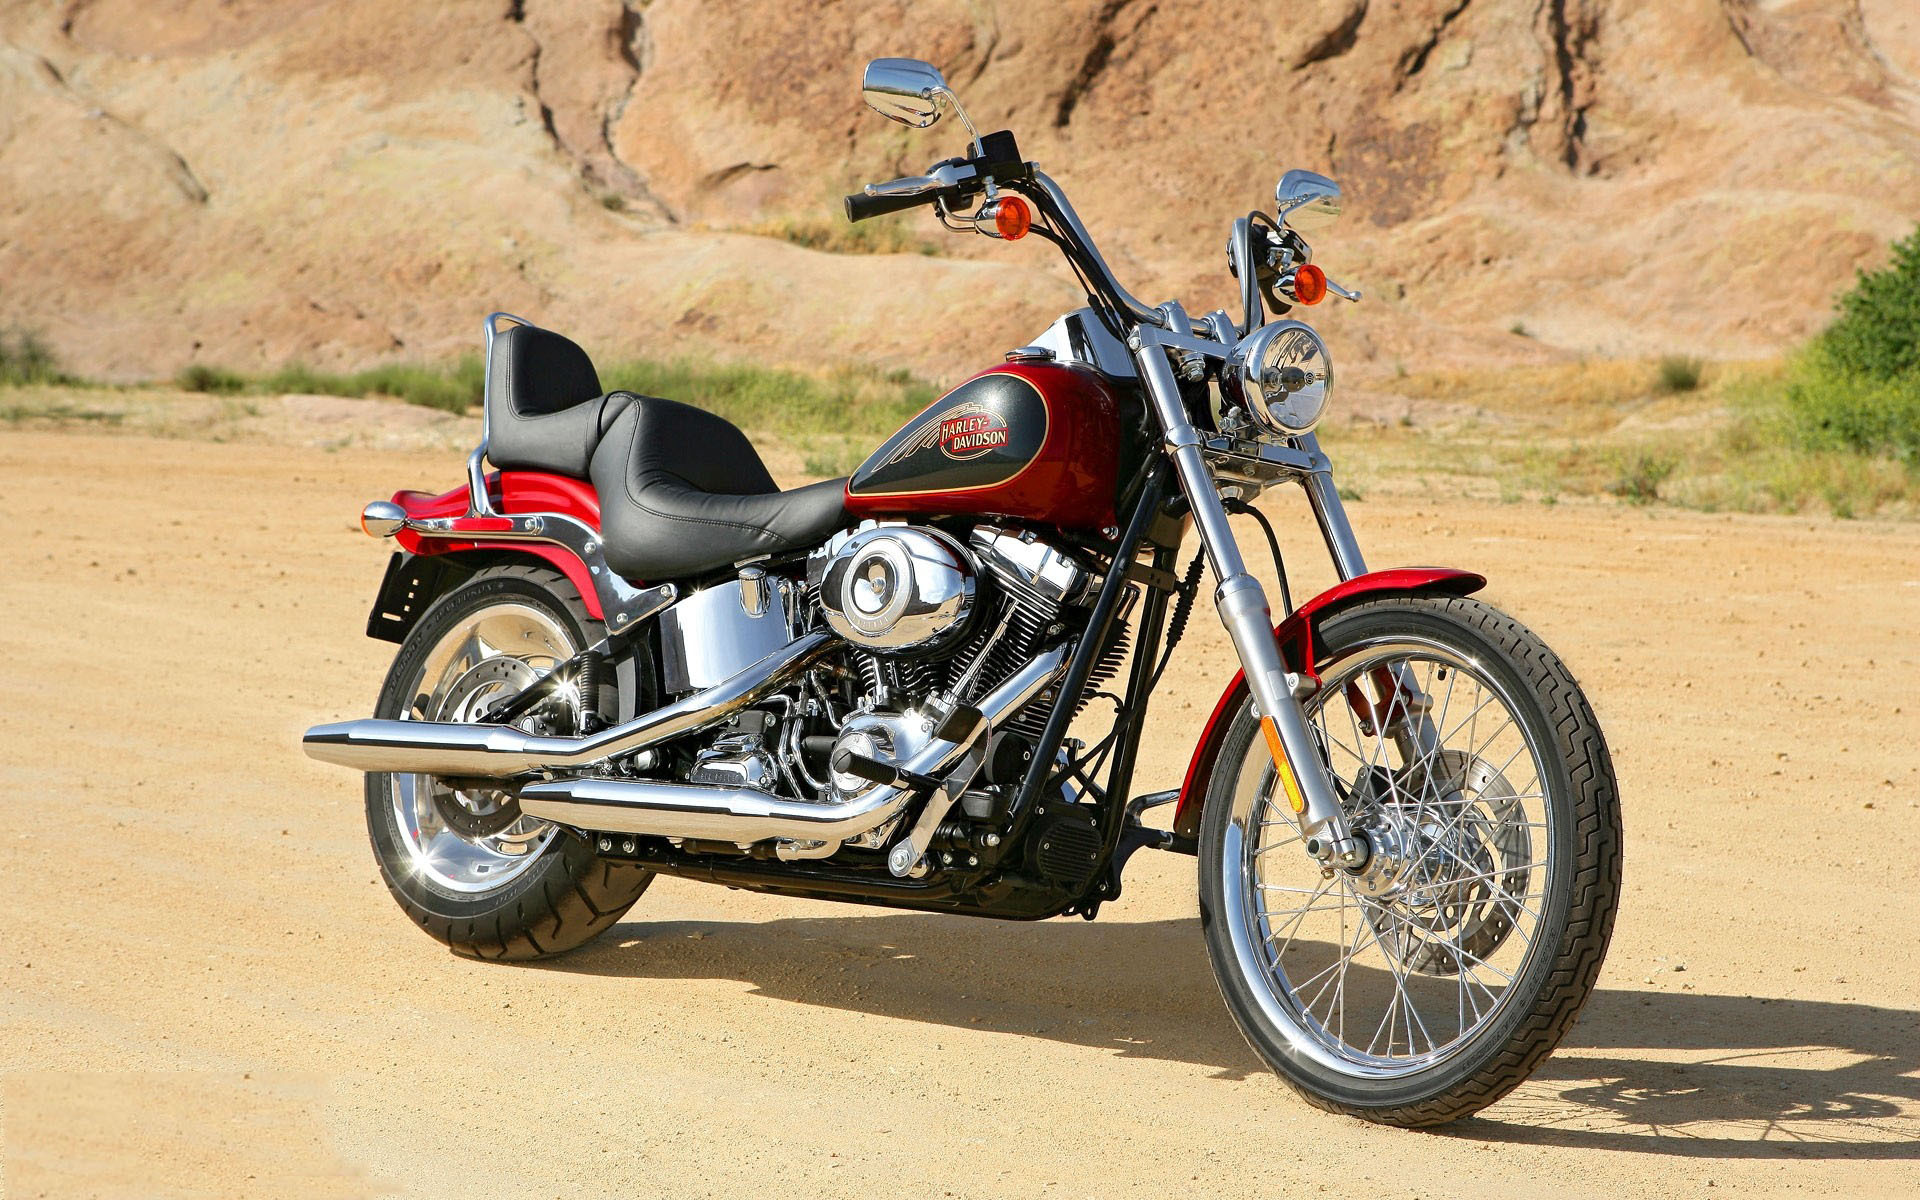 Descarga gratuita de fondo de pantalla para móvil de Motocicletas, Motocicleta, Harley Davidson, Vehículos.